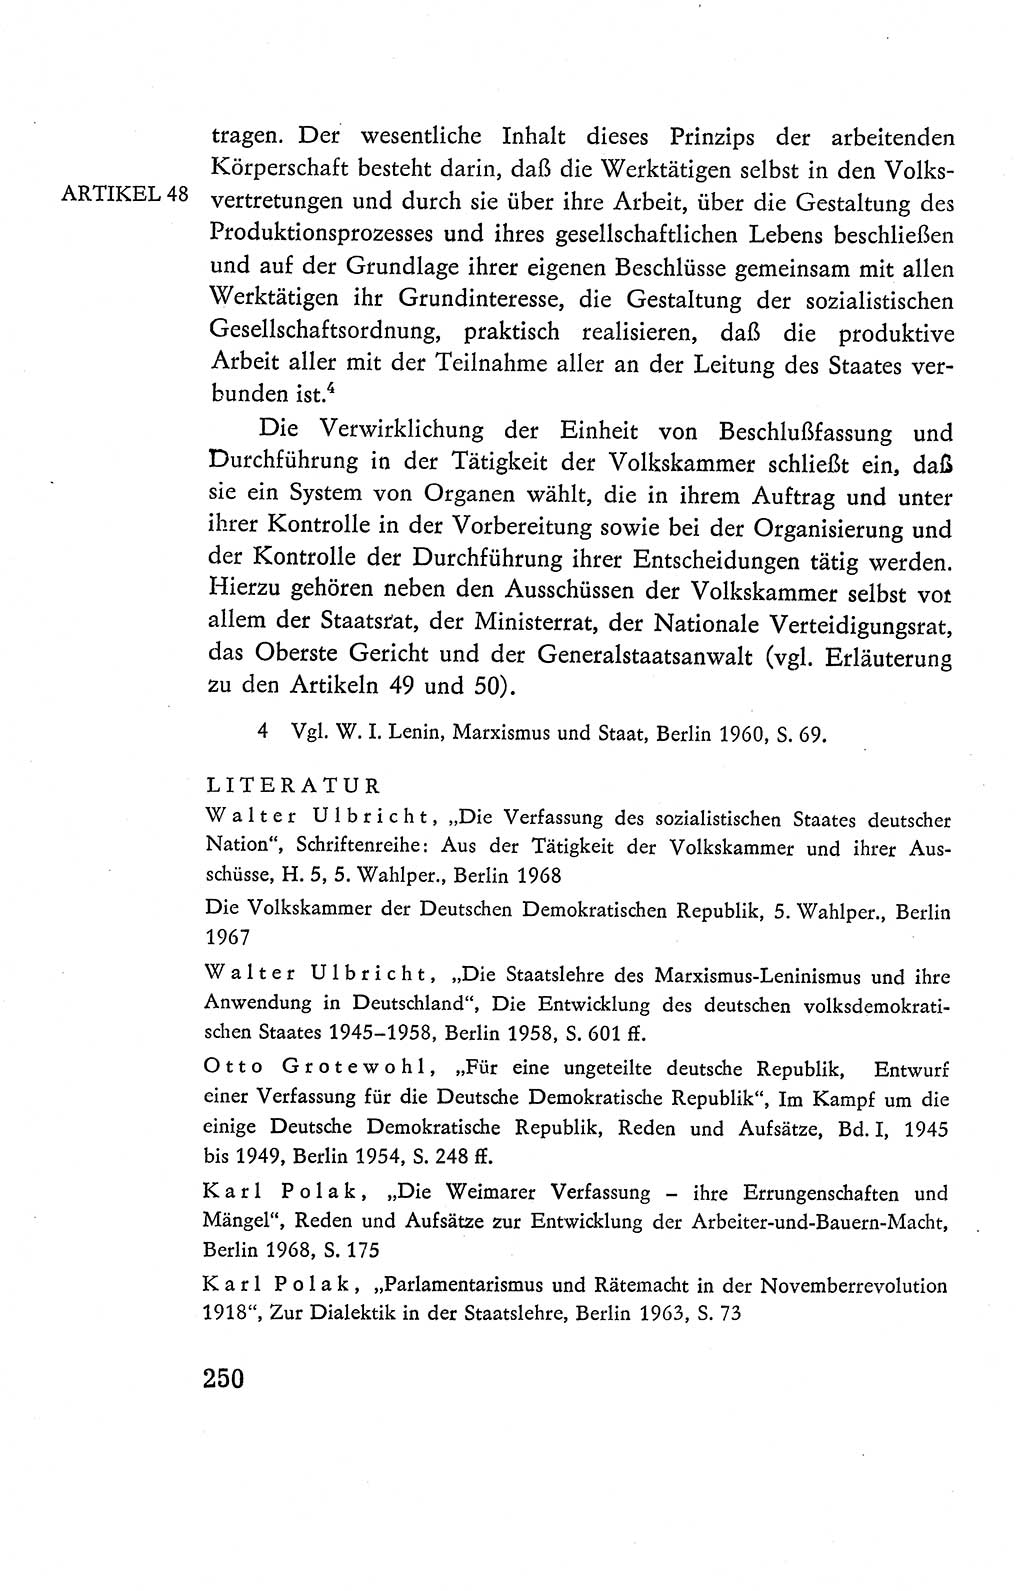 Verfassung der Deutschen Demokratischen Republik (DDR), Dokumente, Kommentar 1969, Band 2, Seite 250 (Verf. DDR Dok. Komm. 1969, Bd. 2, S. 250)